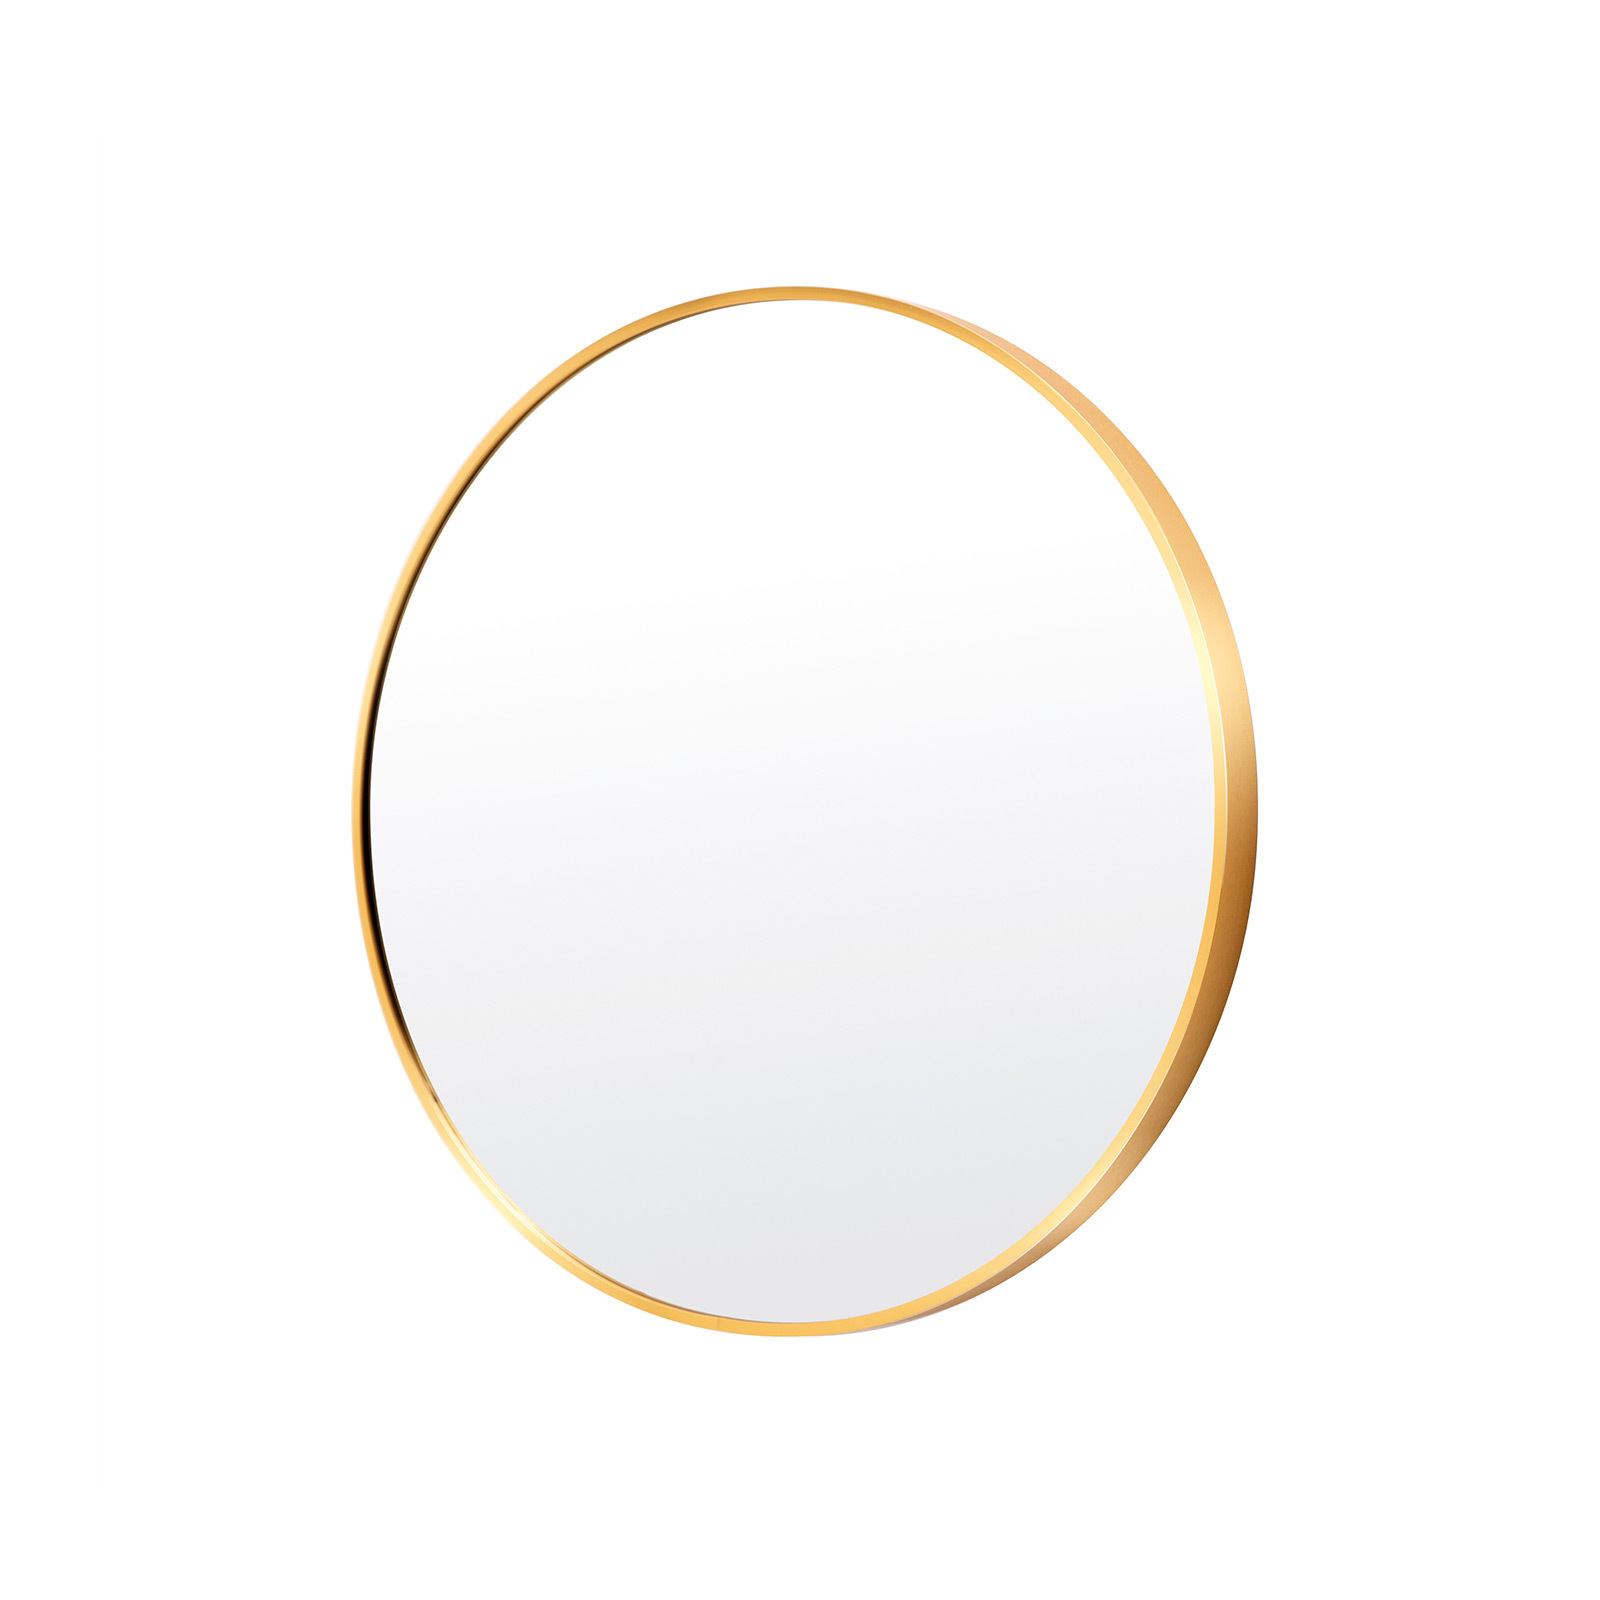 50cm Wall Mirror Round Bathroom - GOLD